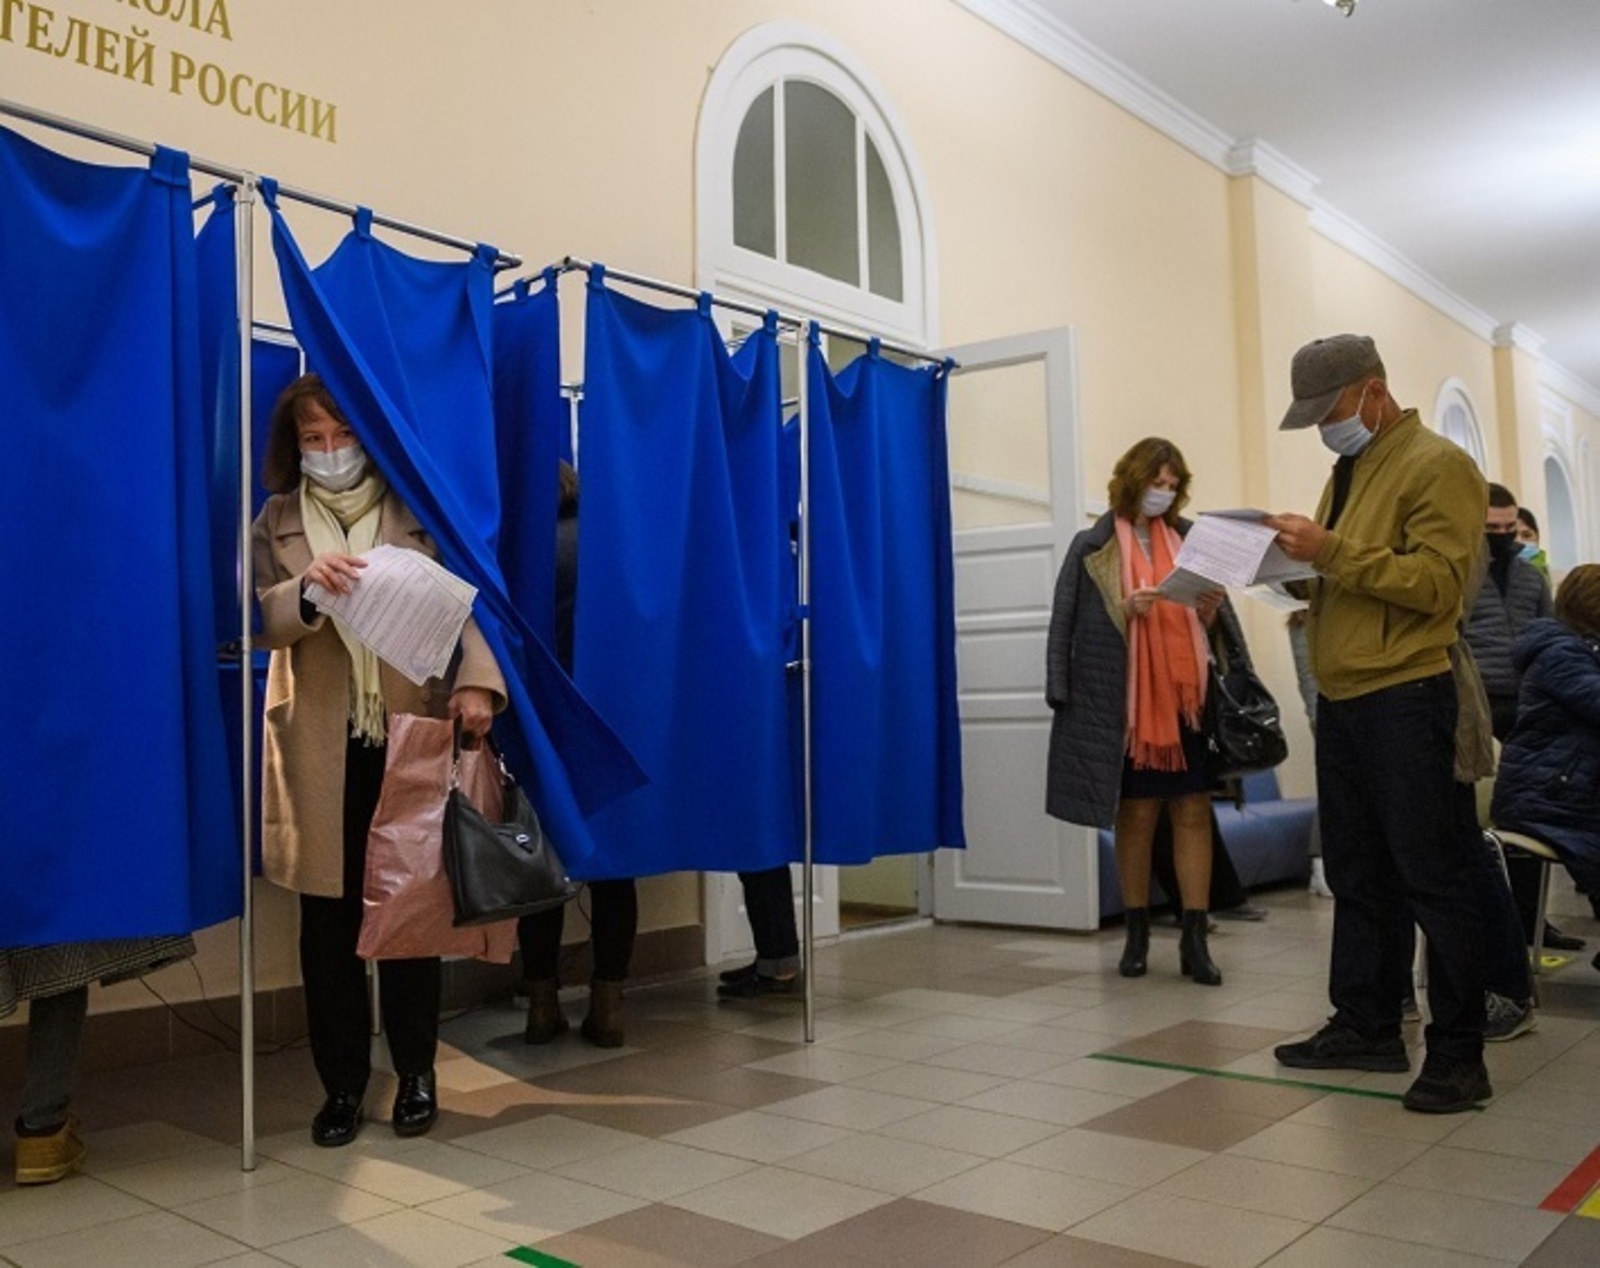 Файруза Латыпова: Выборы стали более прозрачными